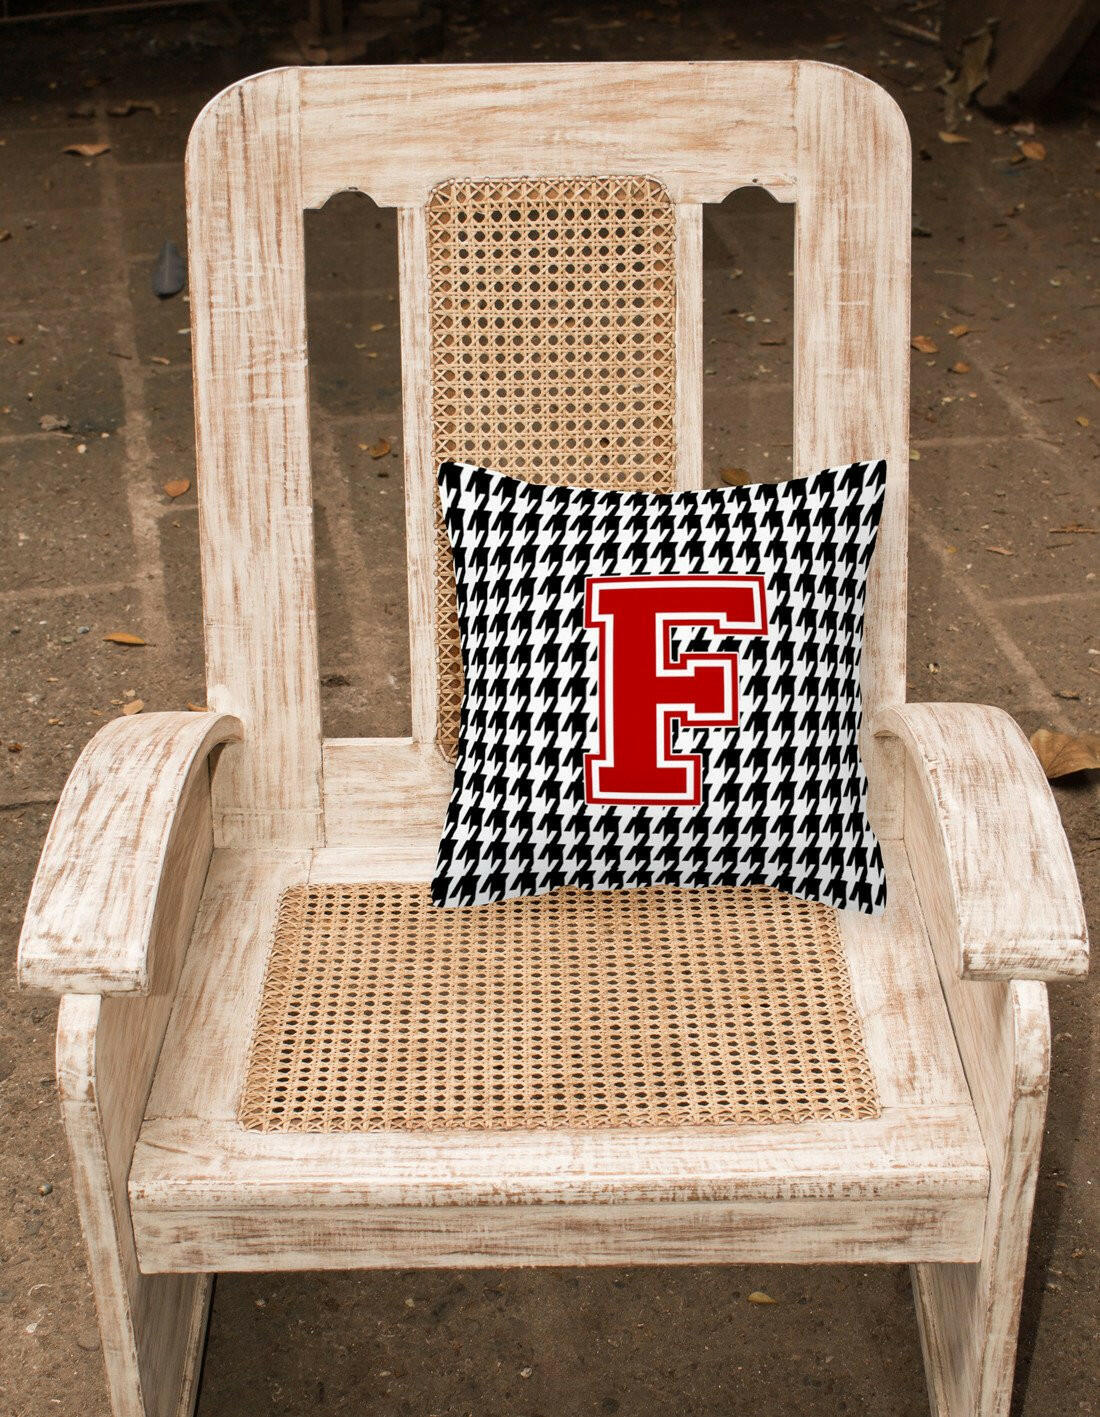 Monogram - Initial F Houndstooth Decorative   Canvas Fabric Pillow CJ1021 - the-store.com